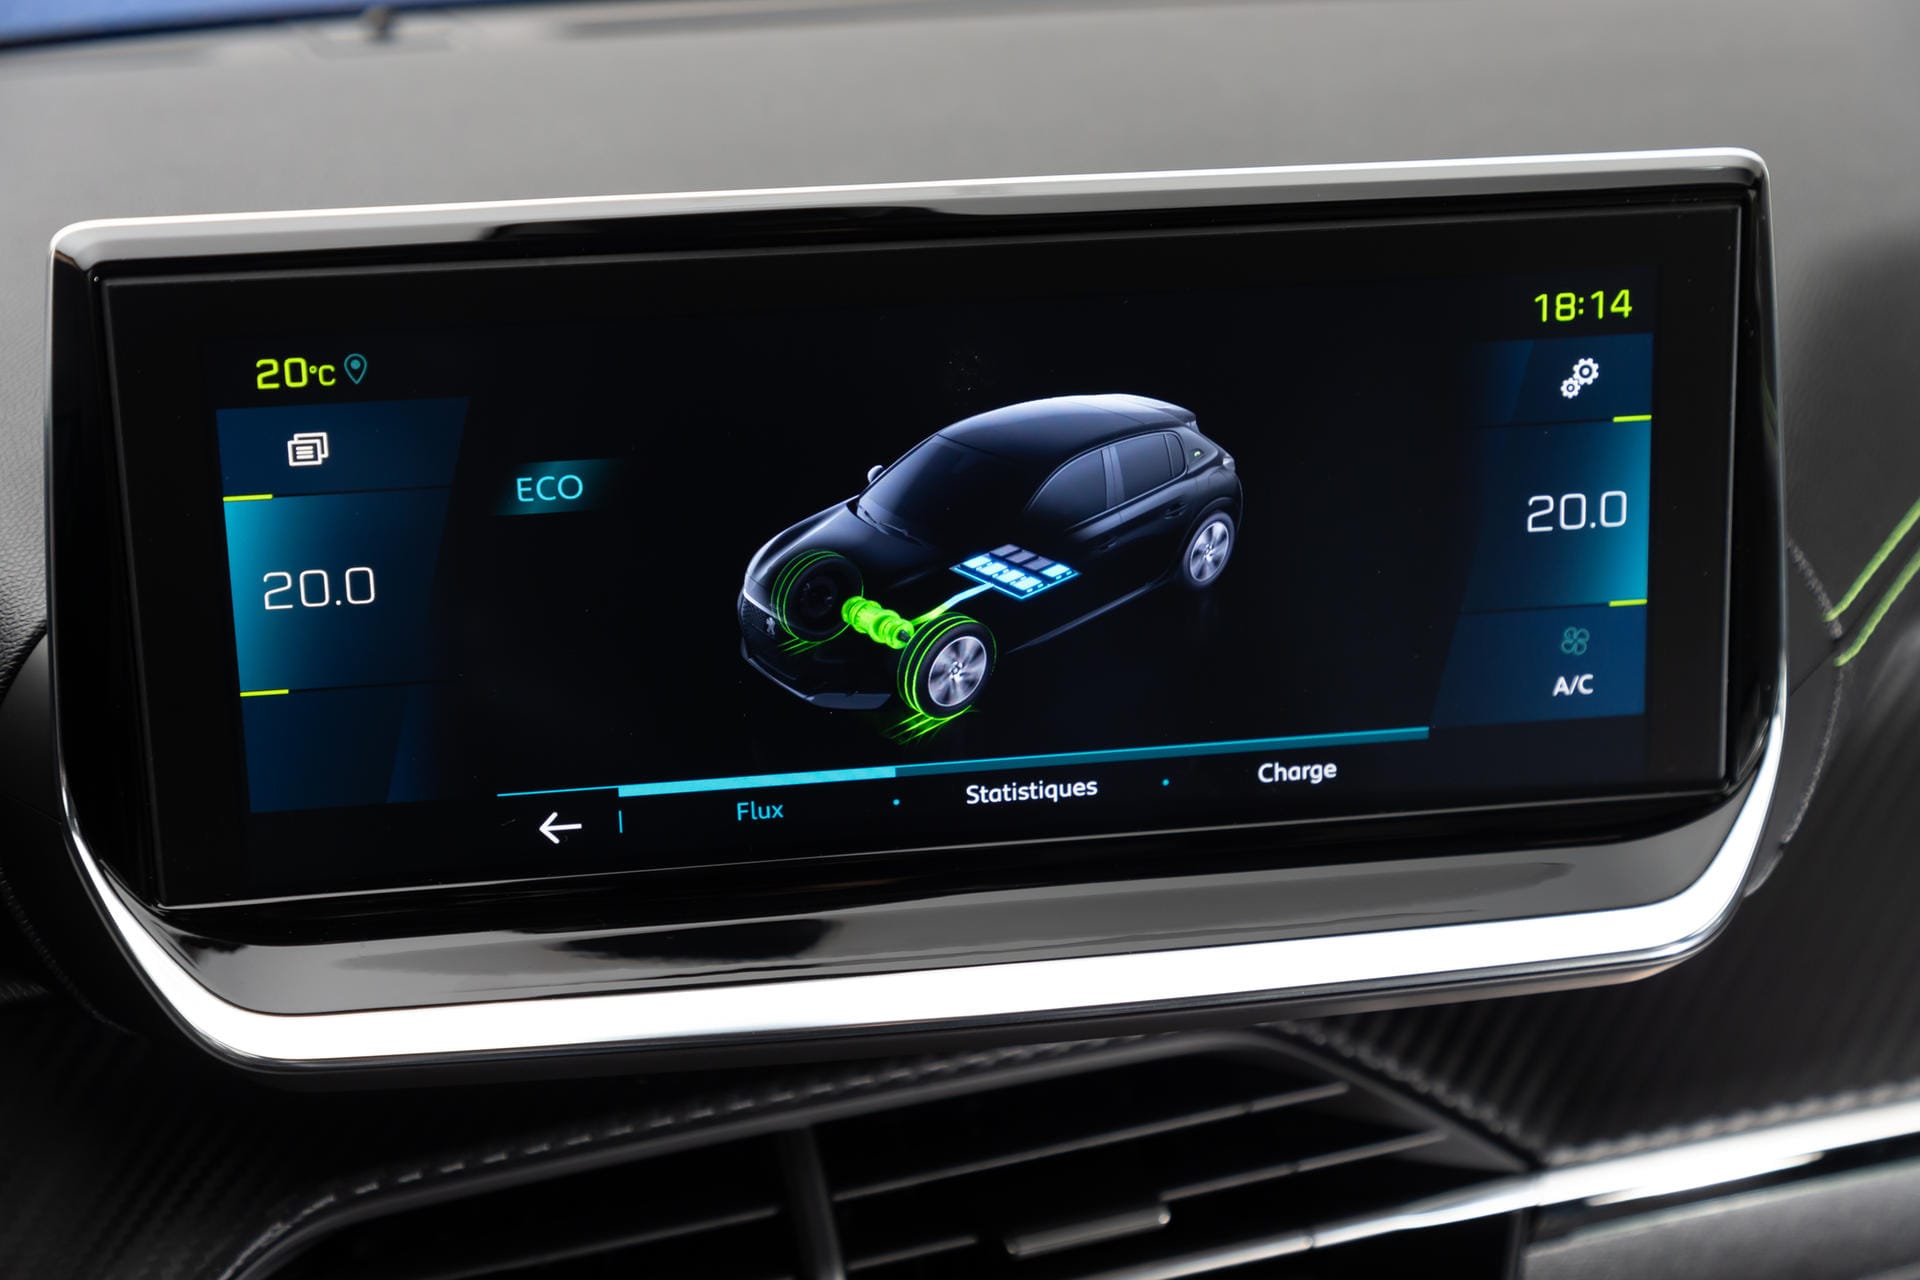 Touchscreen im Peugeot 208: Den Touchscreen auf der Mittelkonsole gibt es je nach Ausstattung in drei Größen: fünf, sieben und zehn Zoll. Das macht bis zu 25,4 cm Bildschirmdiagonale.